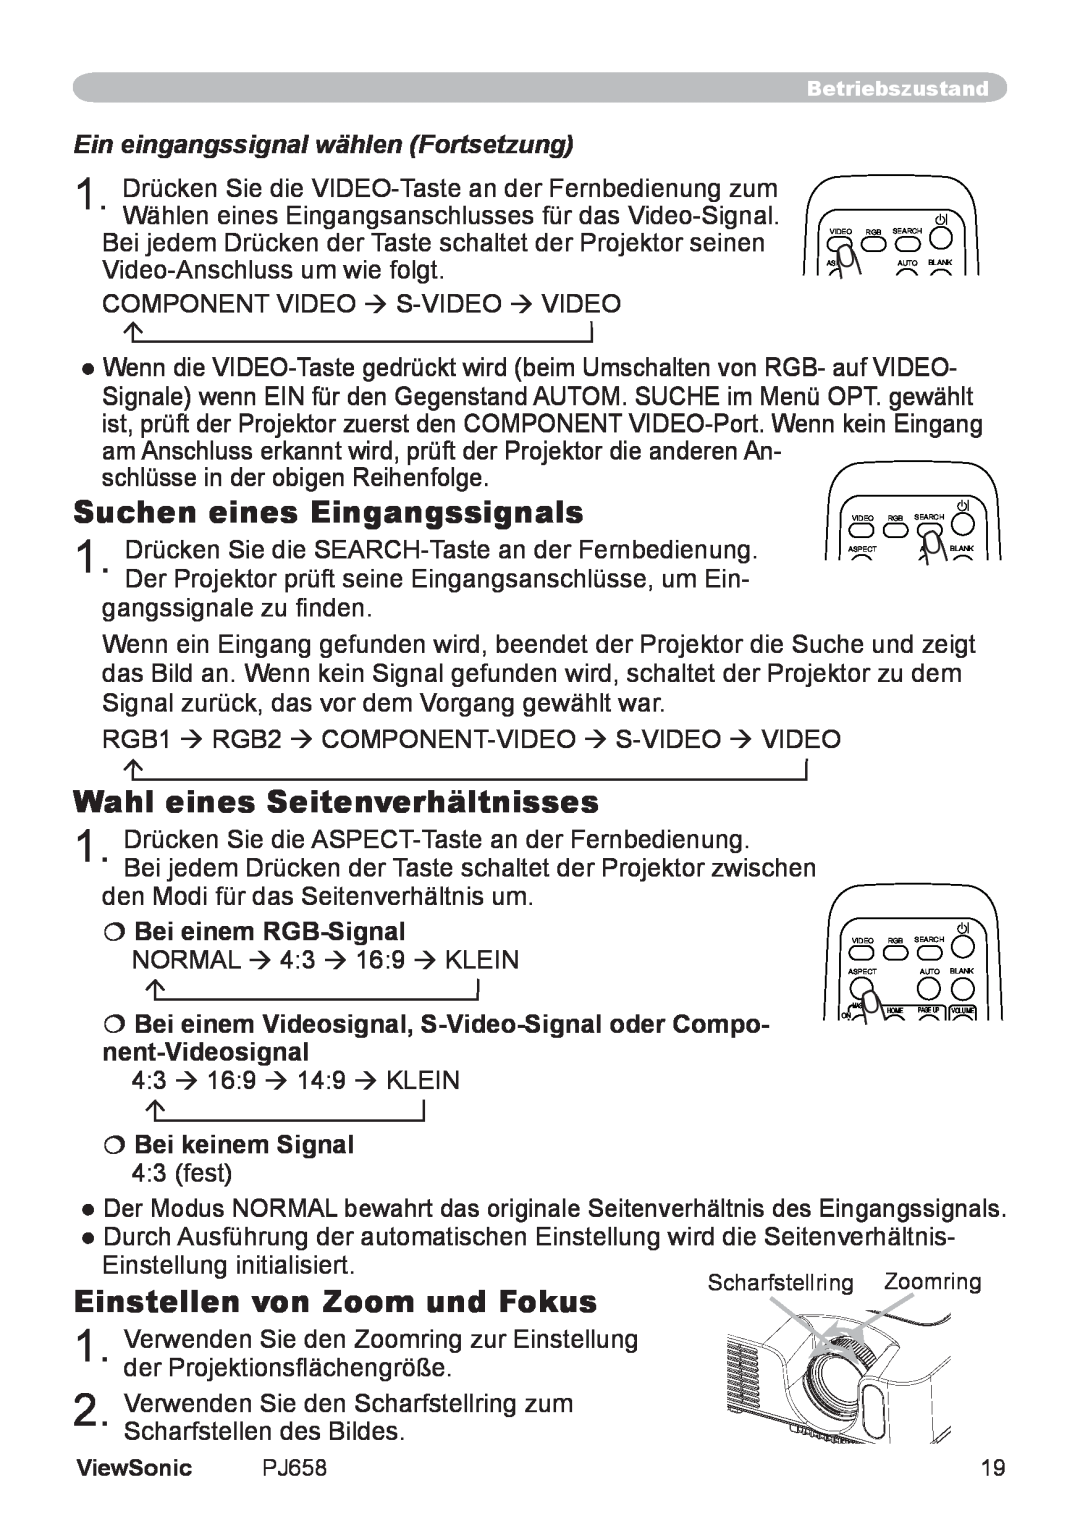 ViewSonic VS11361 manual Suchen eines Eingangssignals, Wahl eines Seitenverhältnisses, Einstellen von Zoom und Fokus 